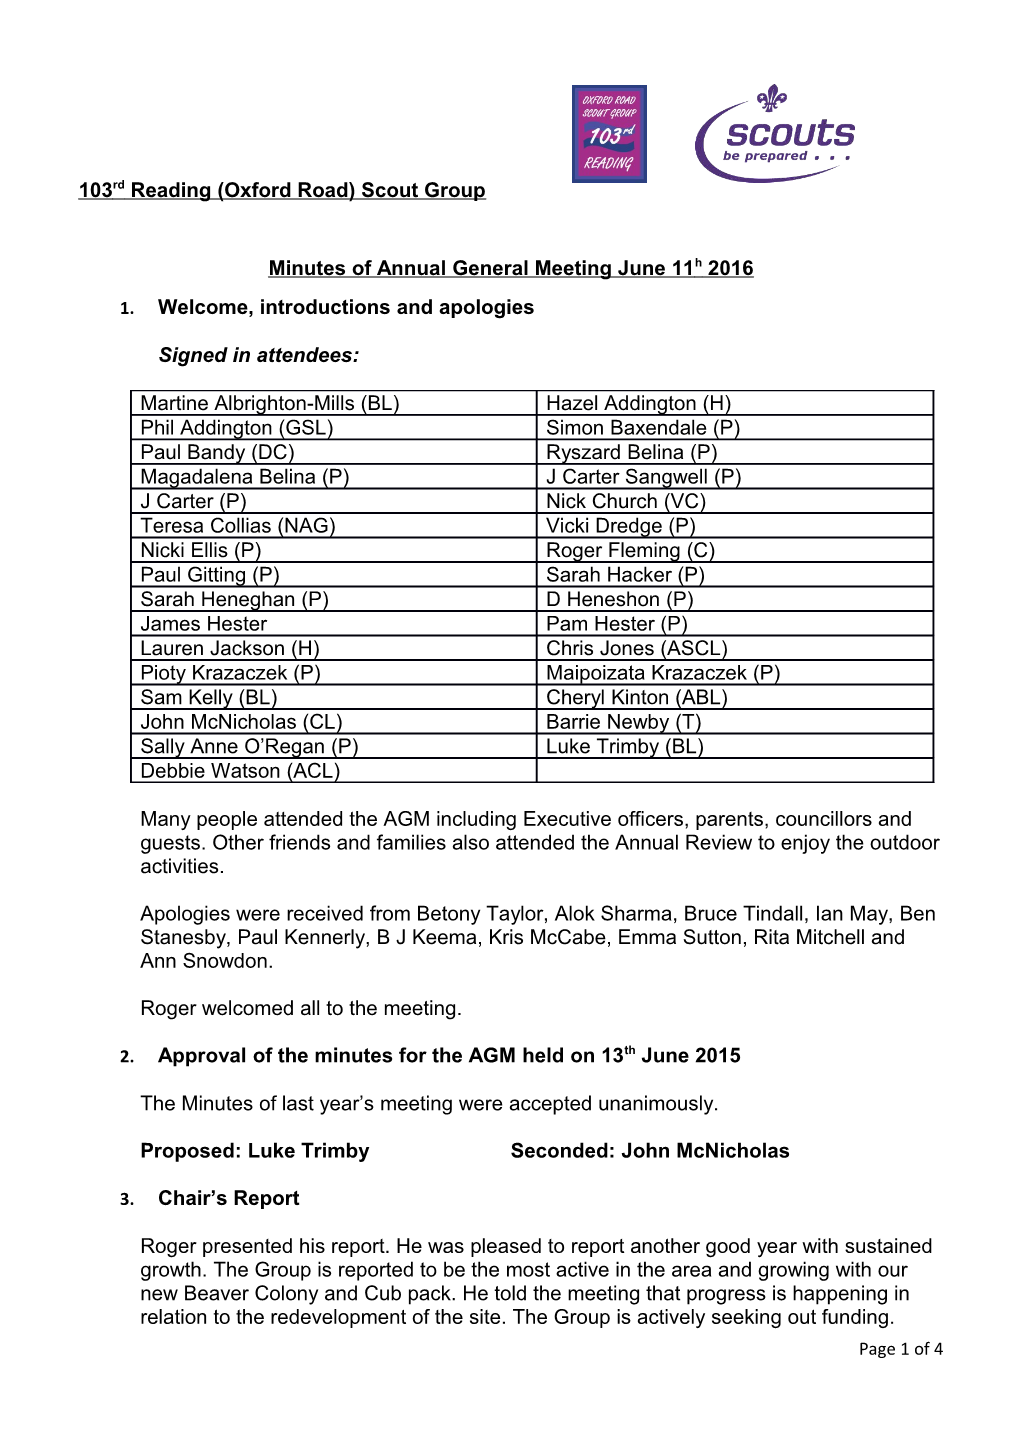 Minutes Ofannual General Meeting June 11H 2016